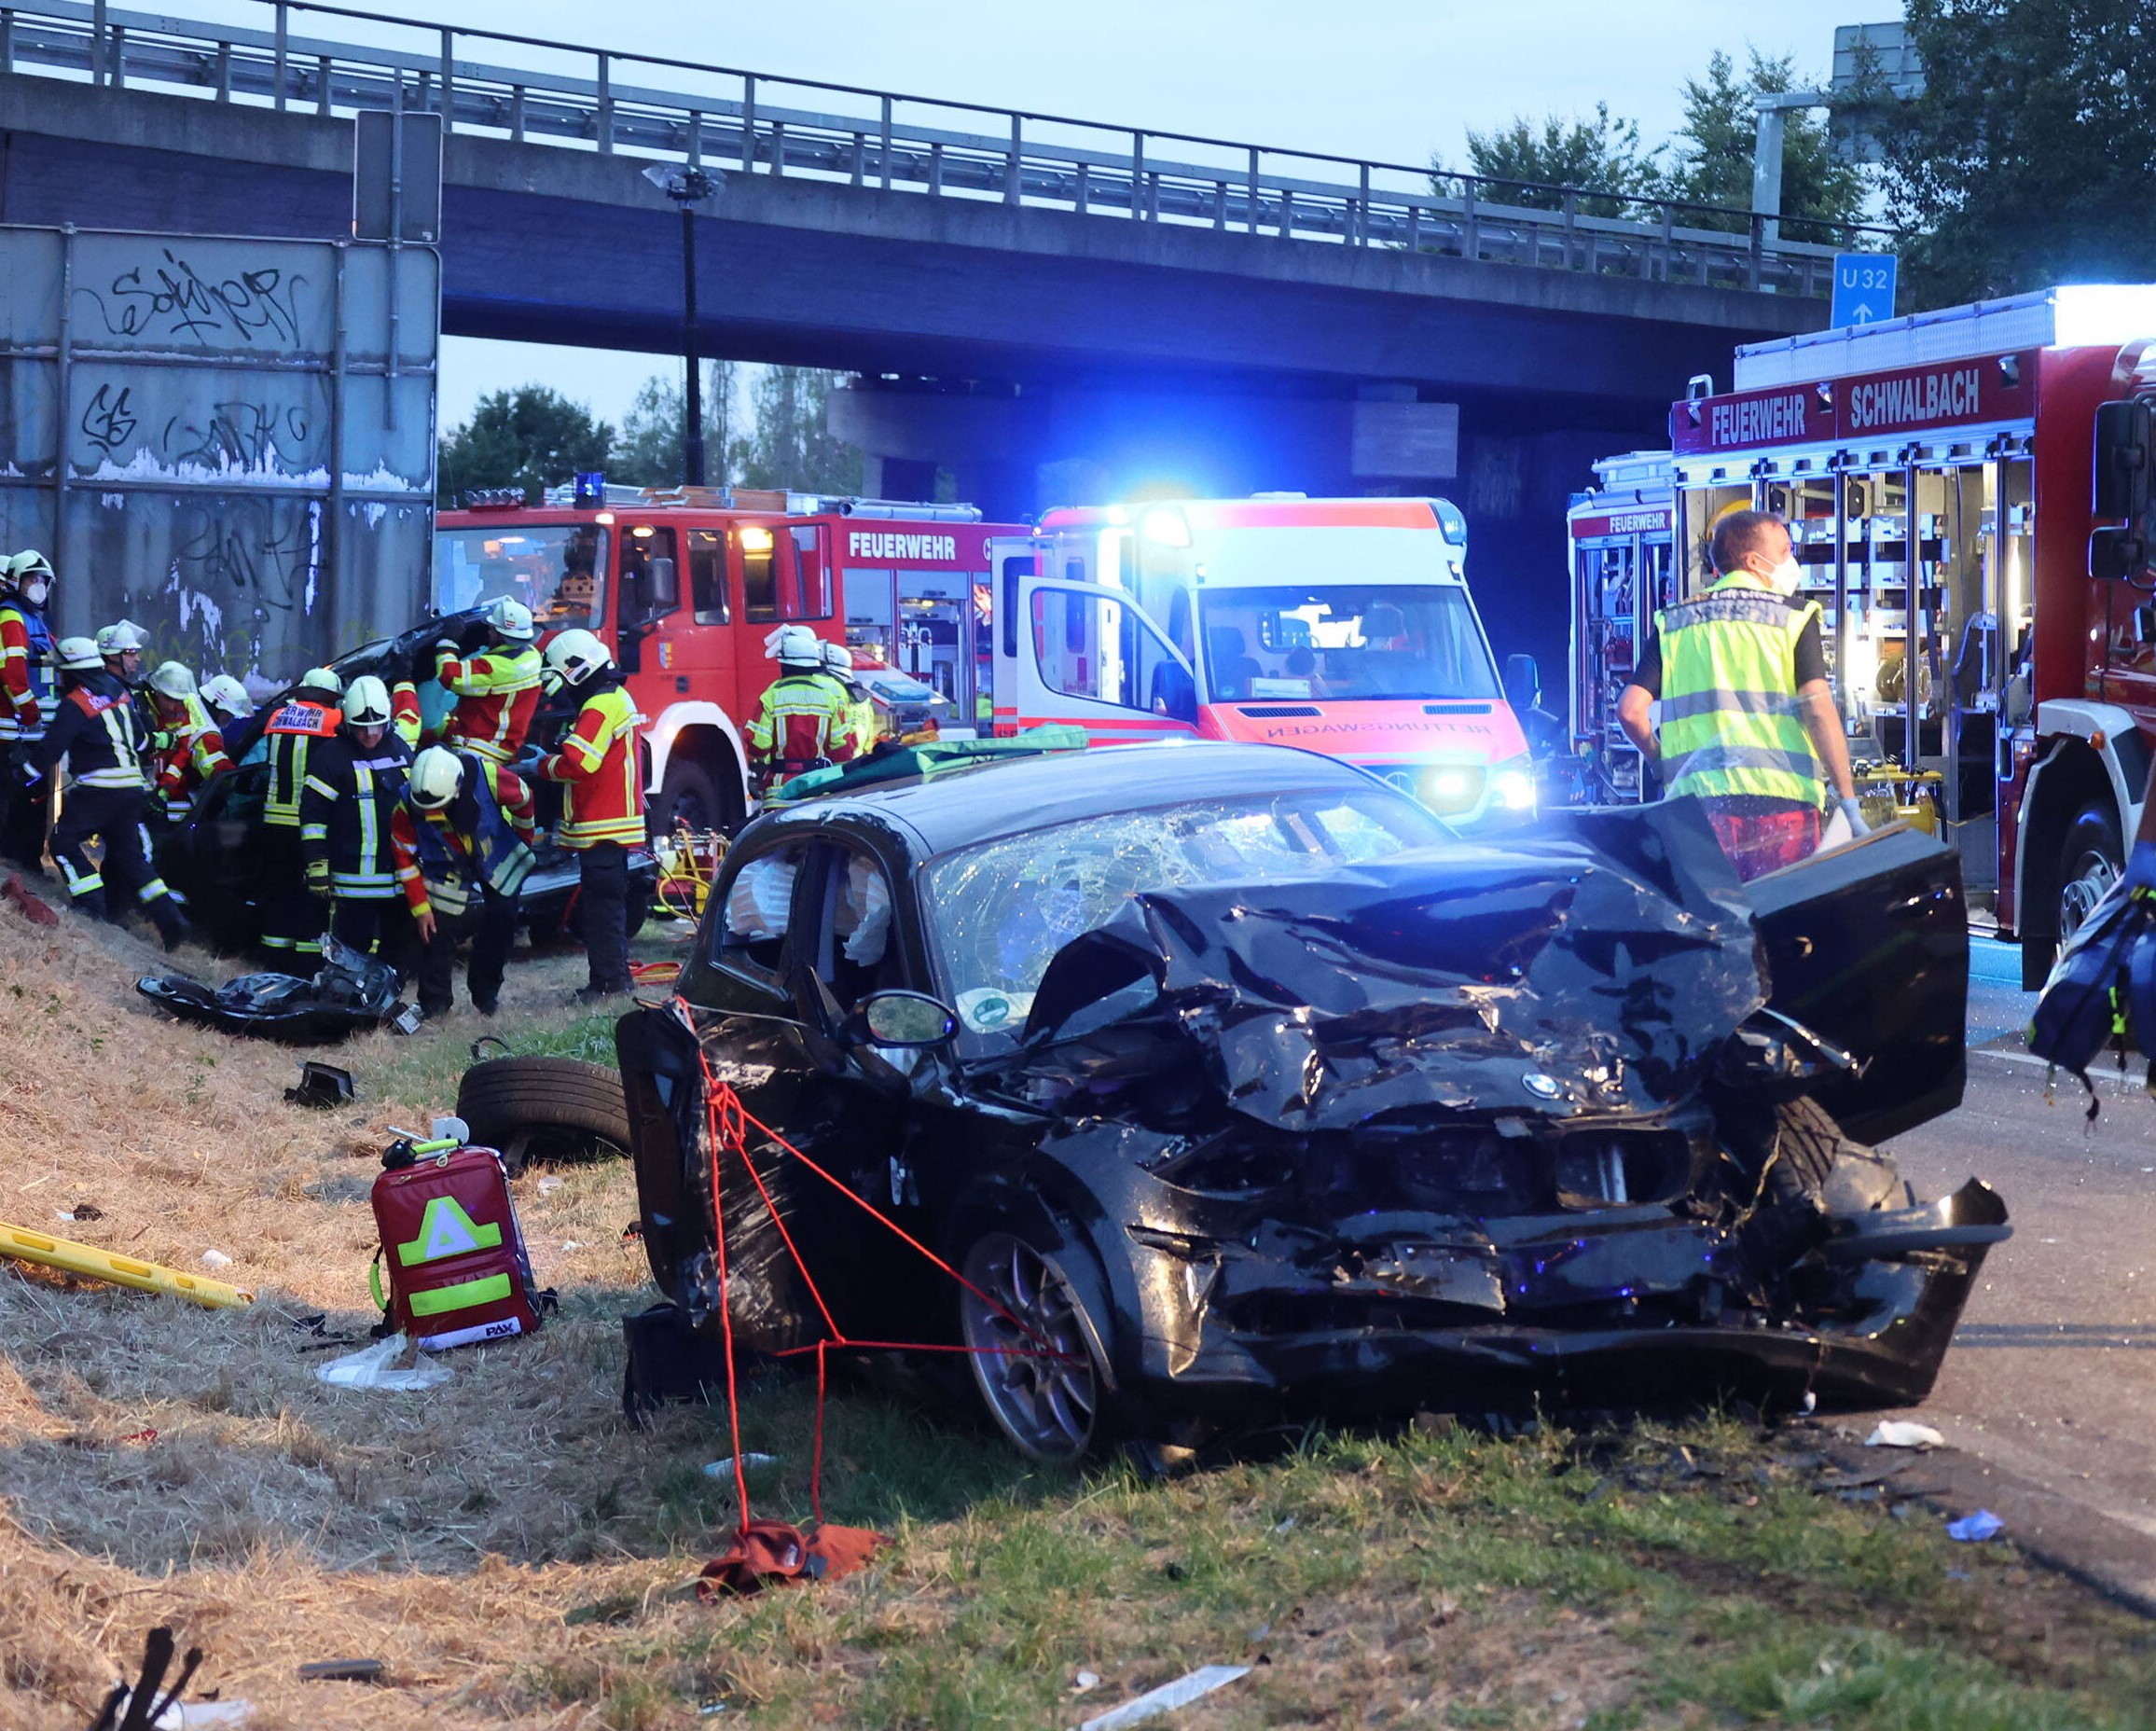 Unfall-Tragödie! Vater und Sohn sterben im Autowrack - Drama am Vatertag! Vollsperrung.